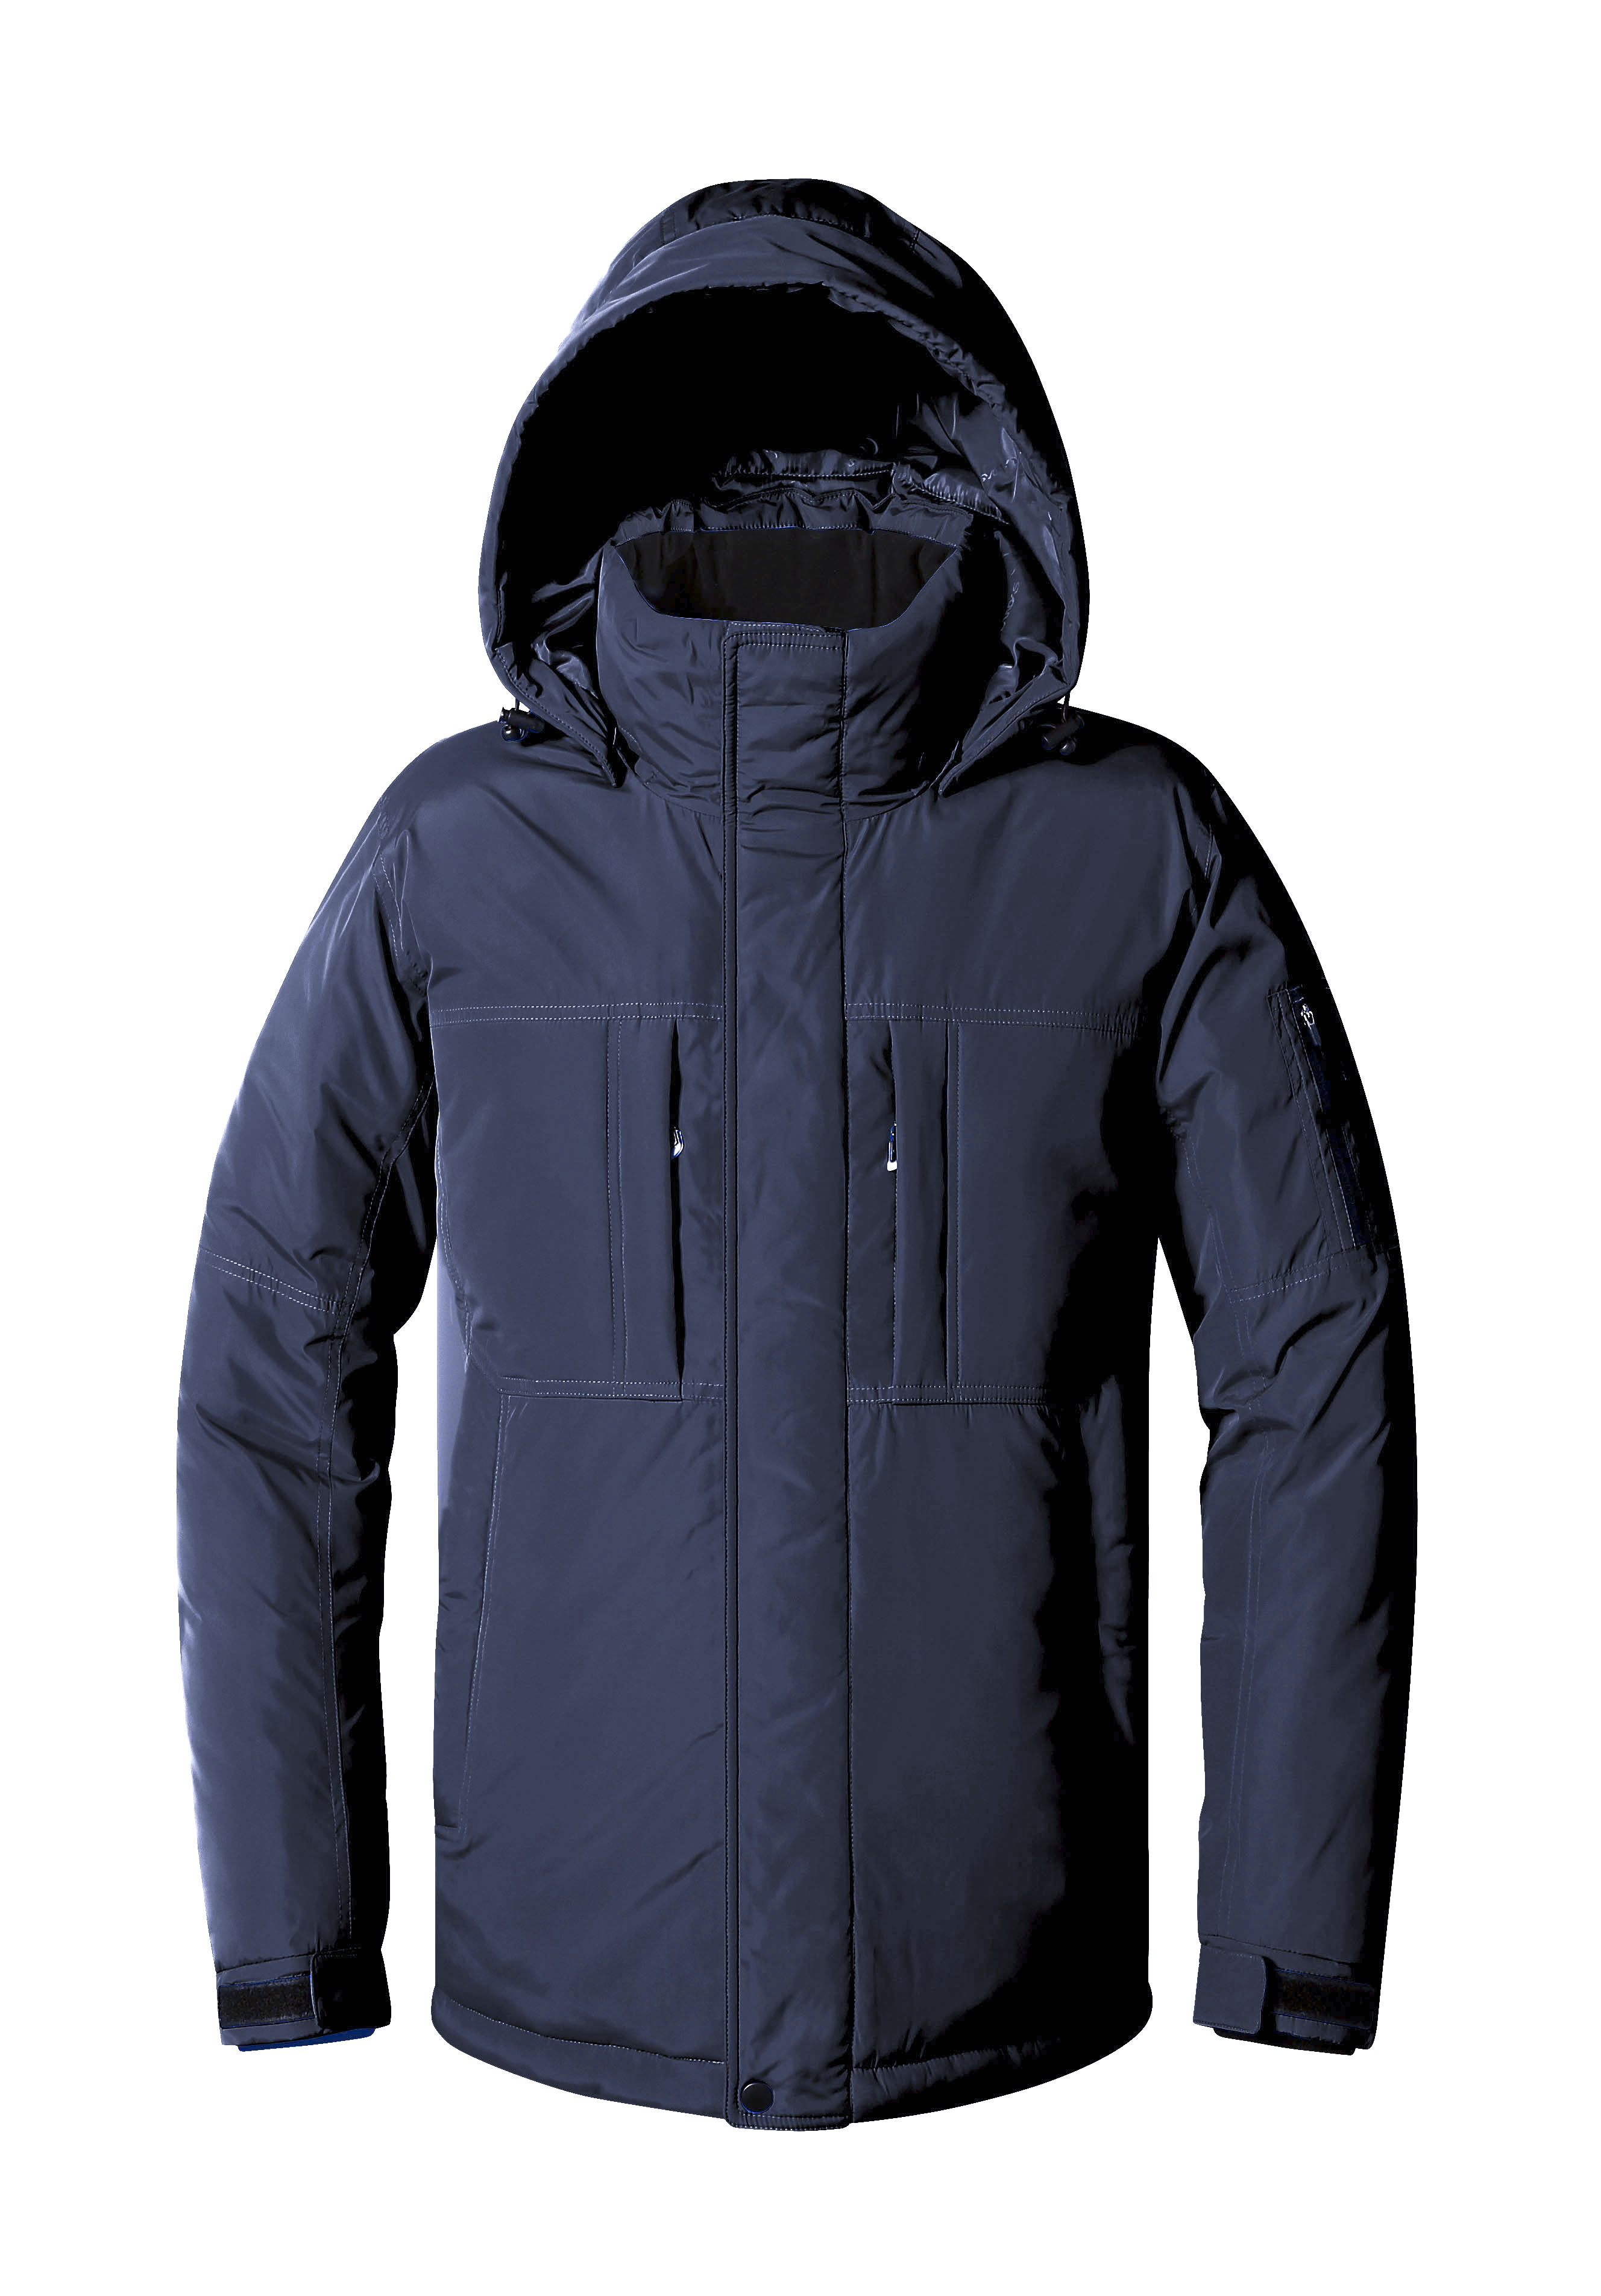 [랜더스 JK-850W] 노르딕 헤비 패딩 자켓, 겨울자켓, 단체복, 롱패딩